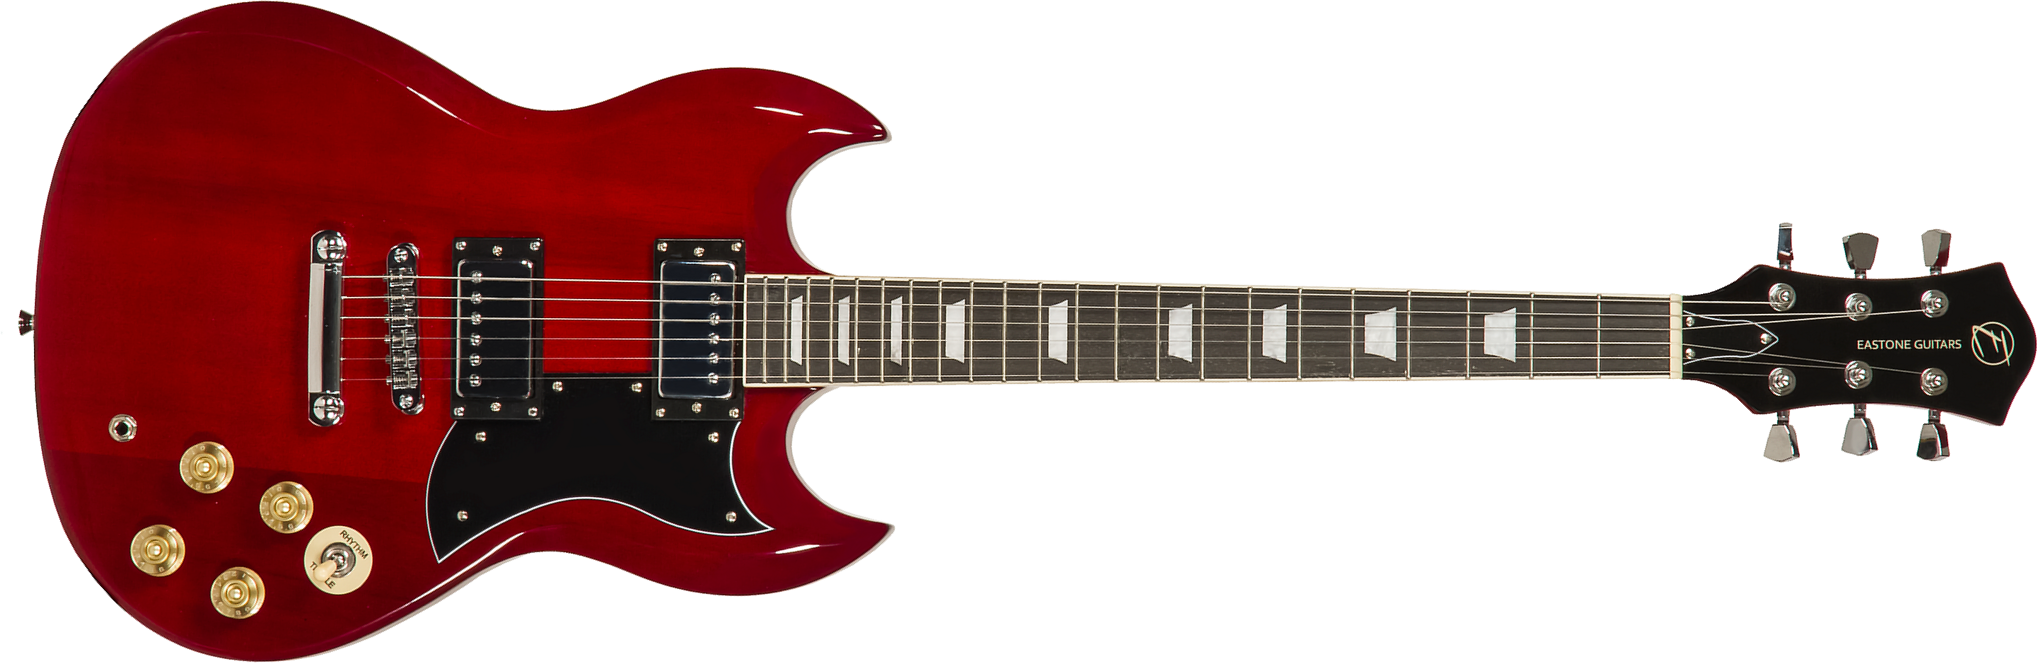 Eastone Sdc70 Hh Ht Pur - Red - Guitarra eléctrica de doble corte. - Main picture